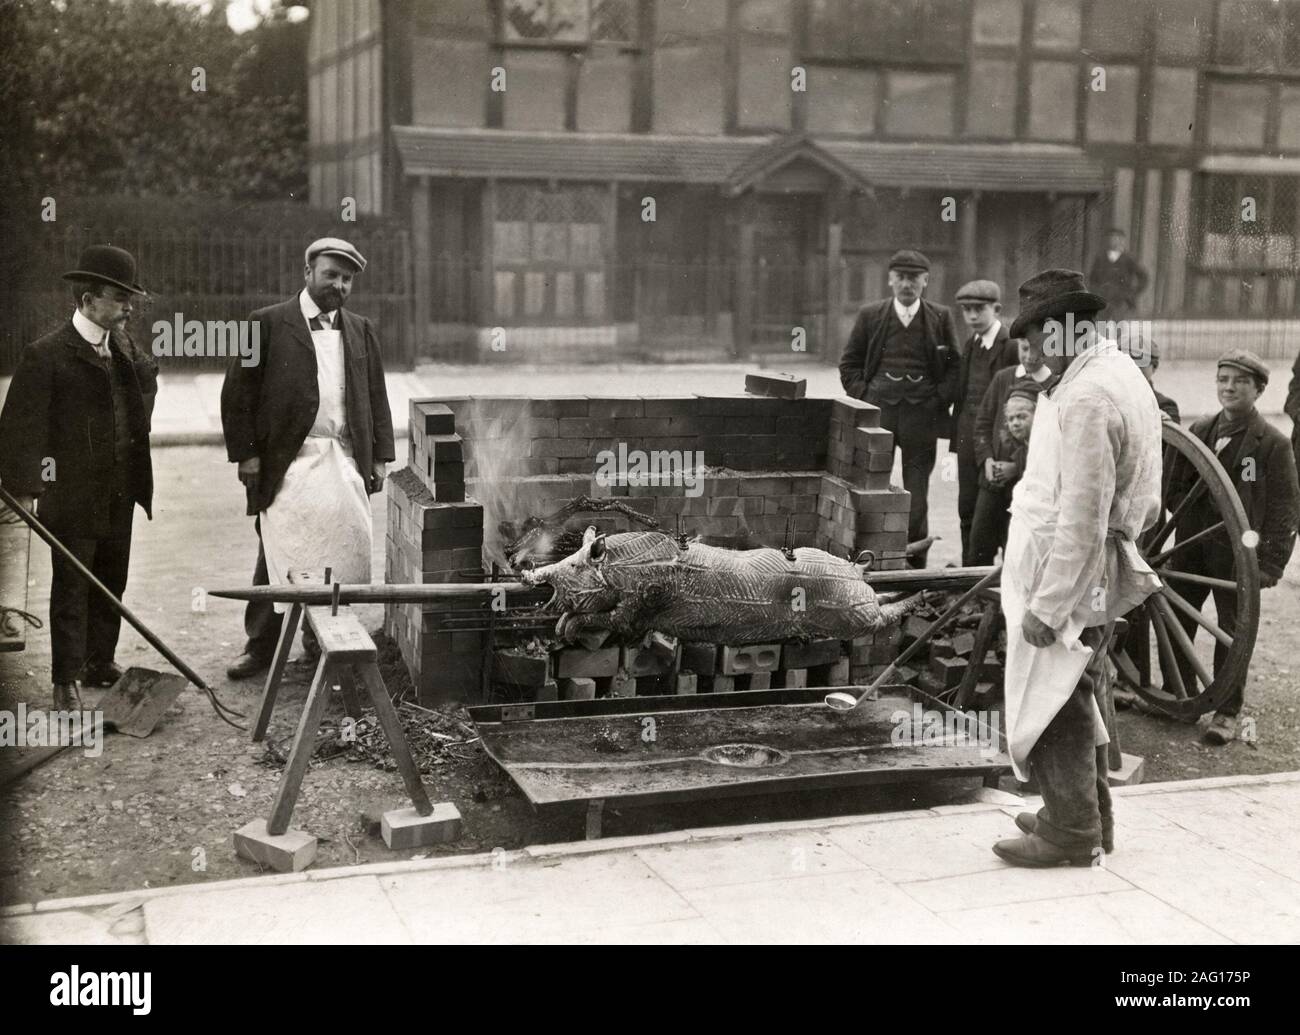 Nei primi anni del XX secolo vintage premere fotografia - uomini tostatura di un maiale allo spiedo in strada, da qualche parte nel Regno Unito c.1920s Foto Stock